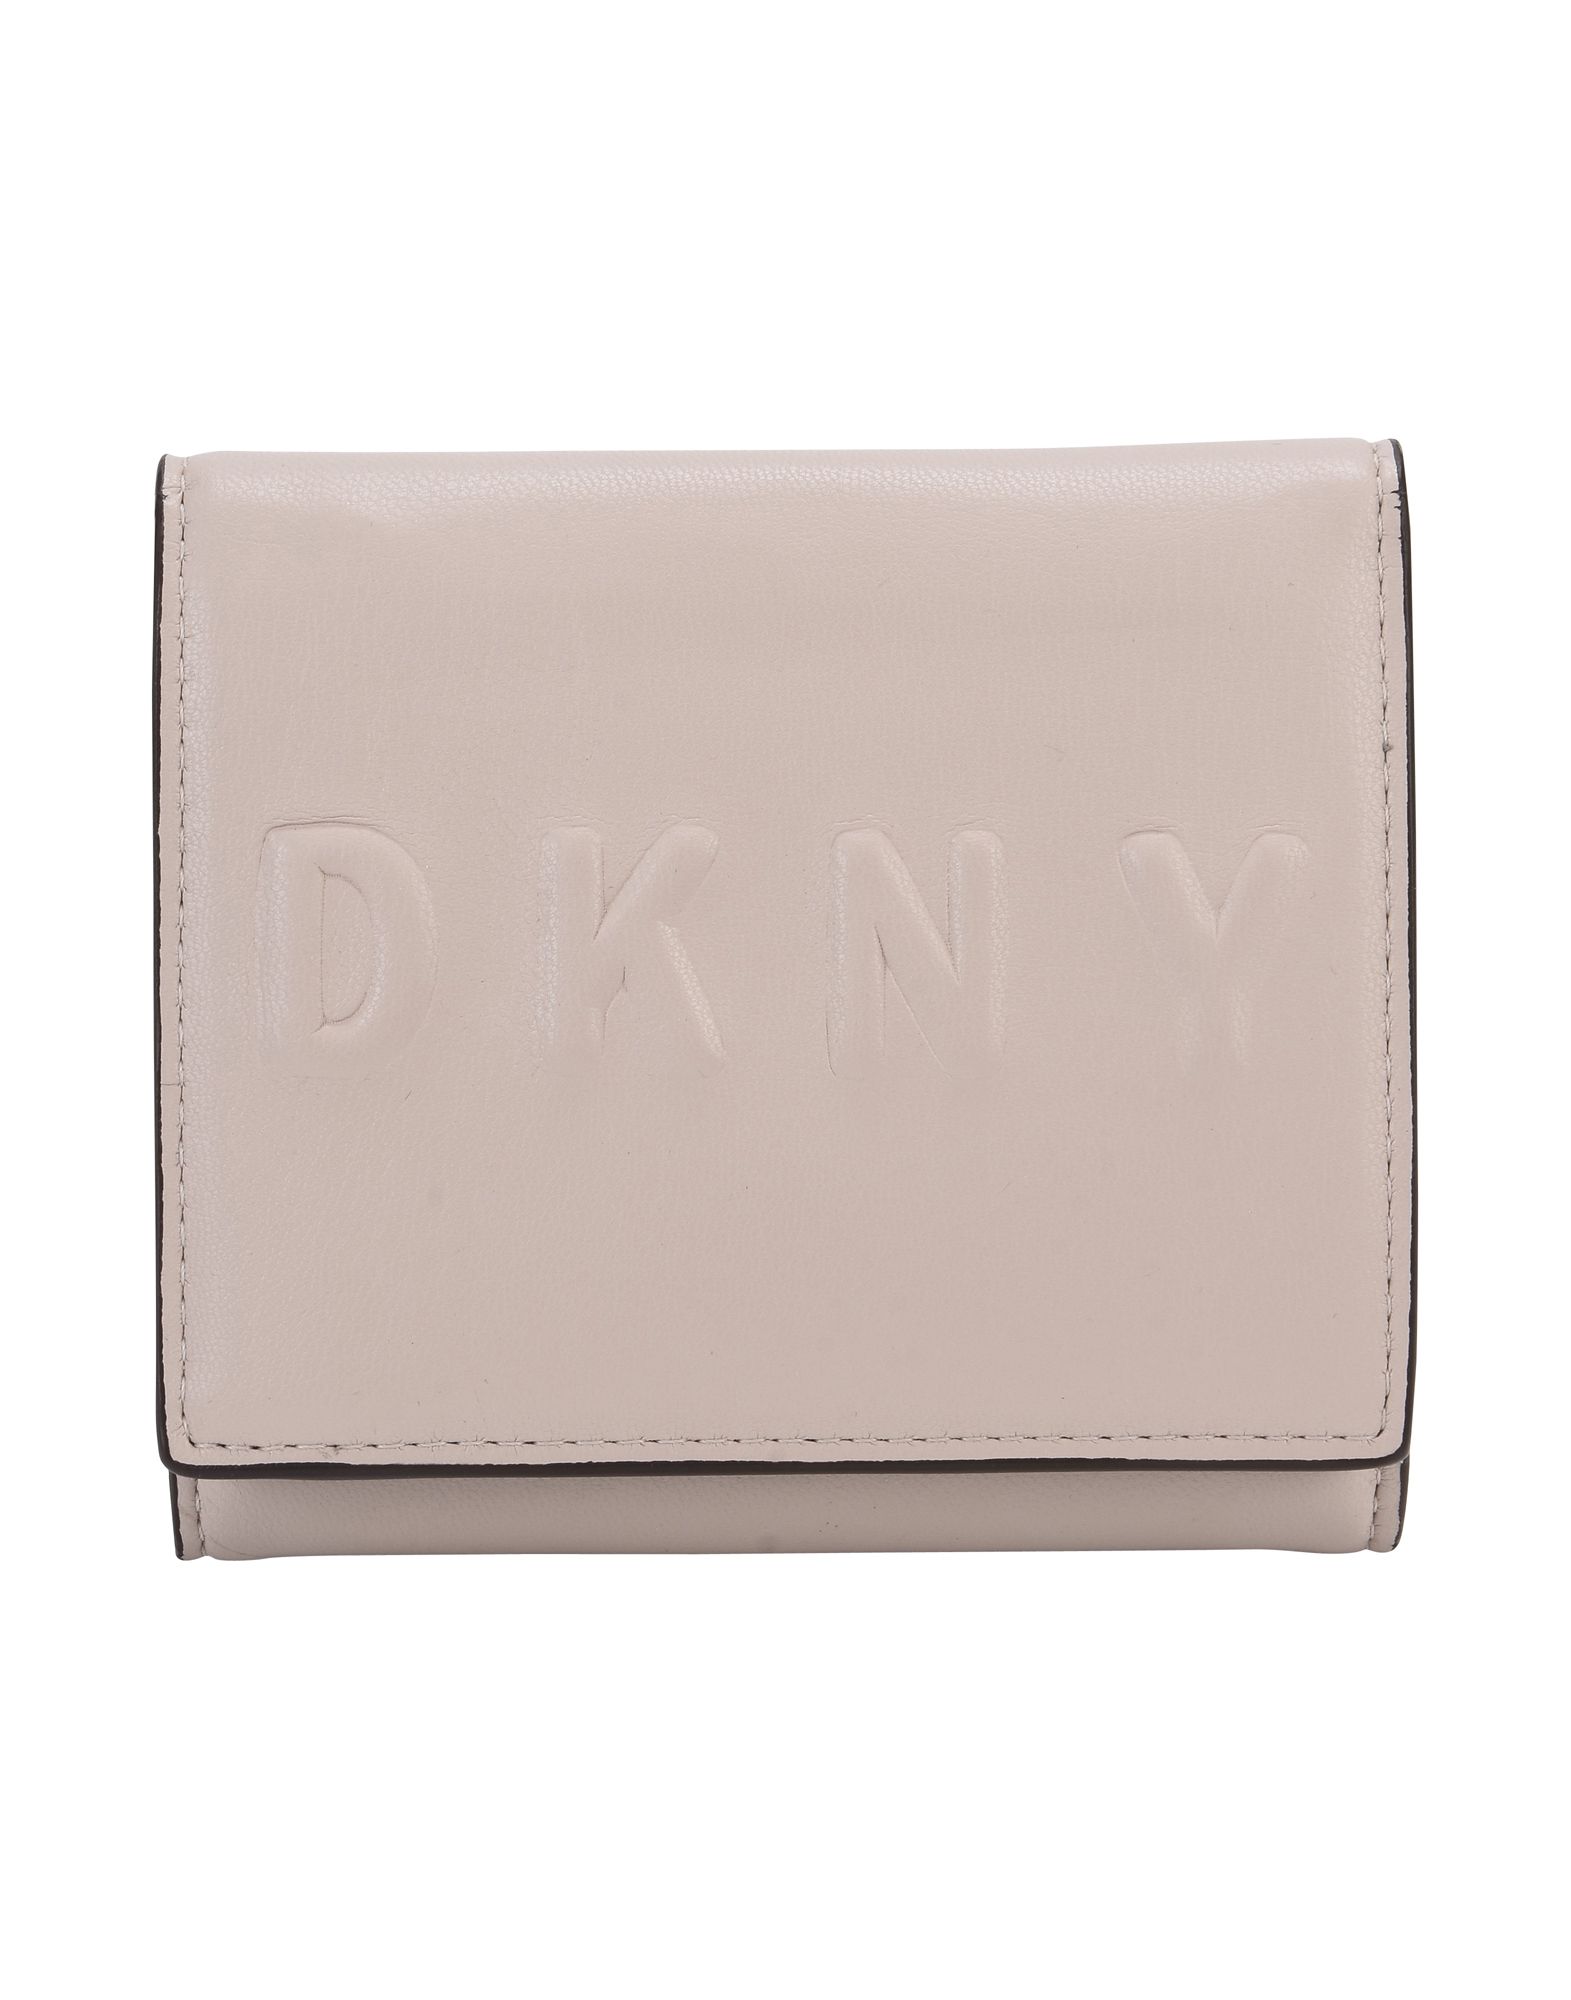 ディーケーエヌワイ(DKNY) 財布 | 通販・人気ランキング - 価格.com